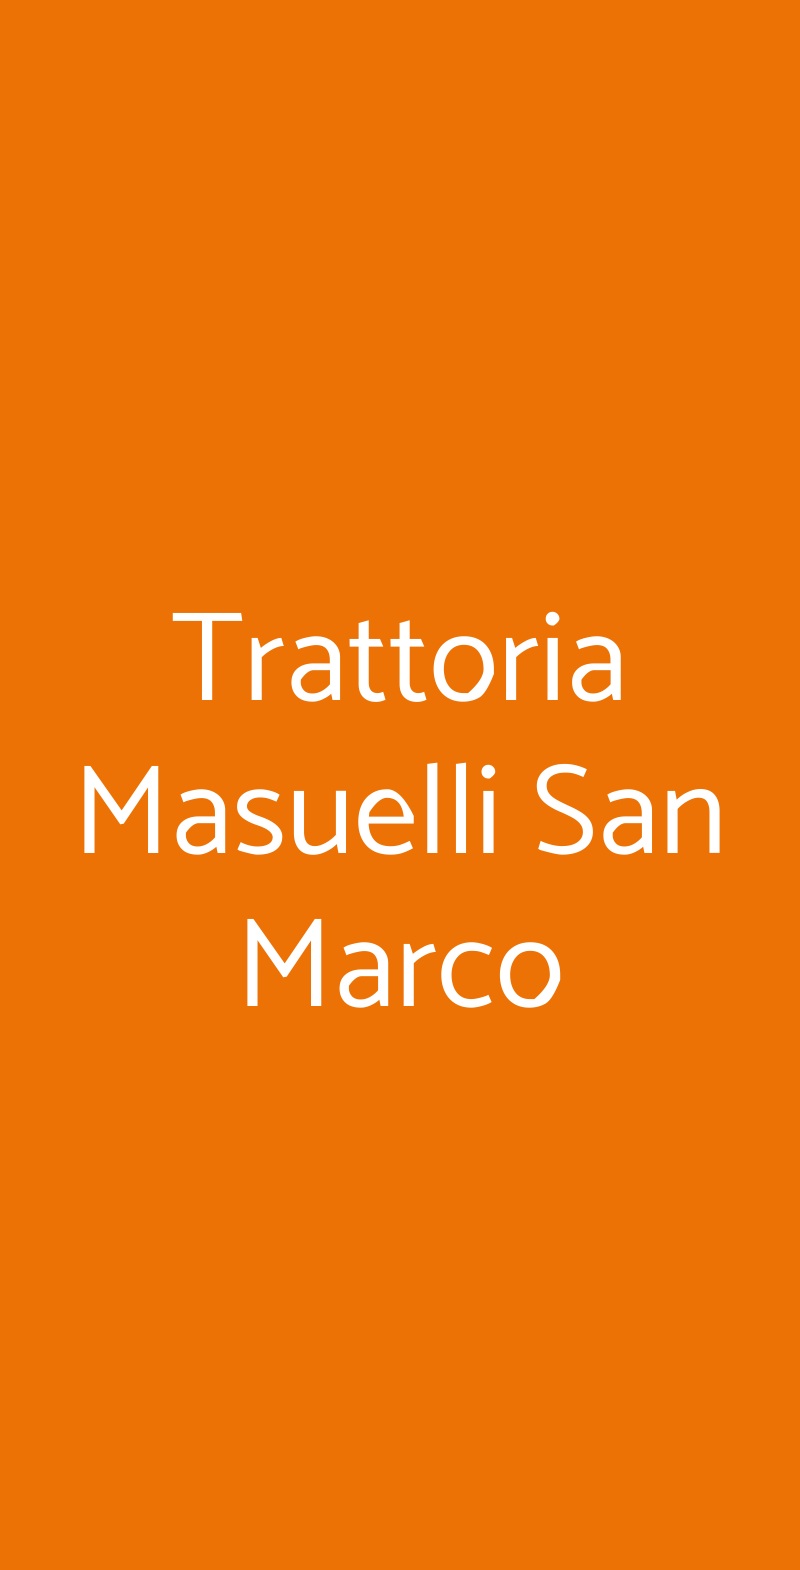 Trattoria Masuelli San Marco Milano menù 1 pagina